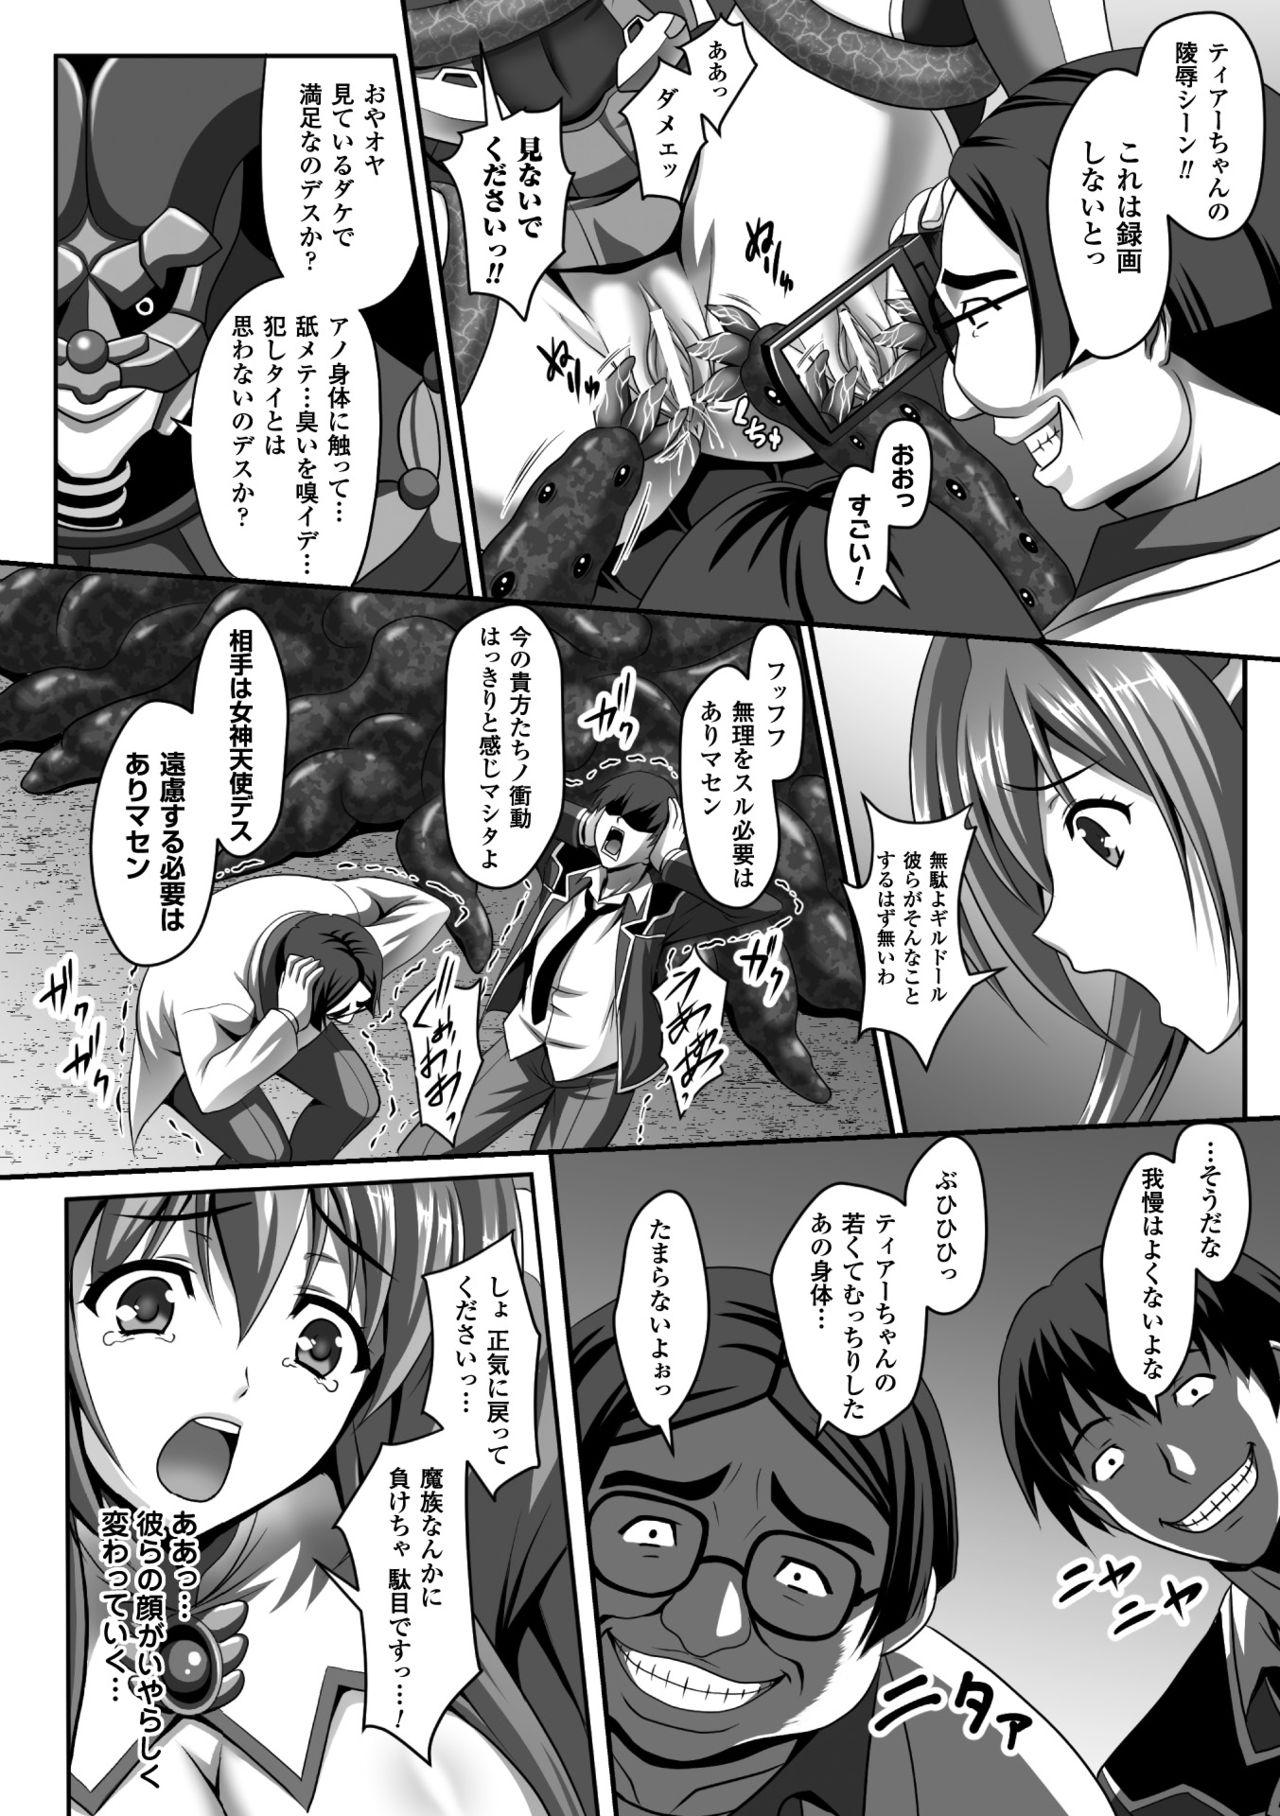 Seigi no Heroine Kangoku File Vol. 5 7